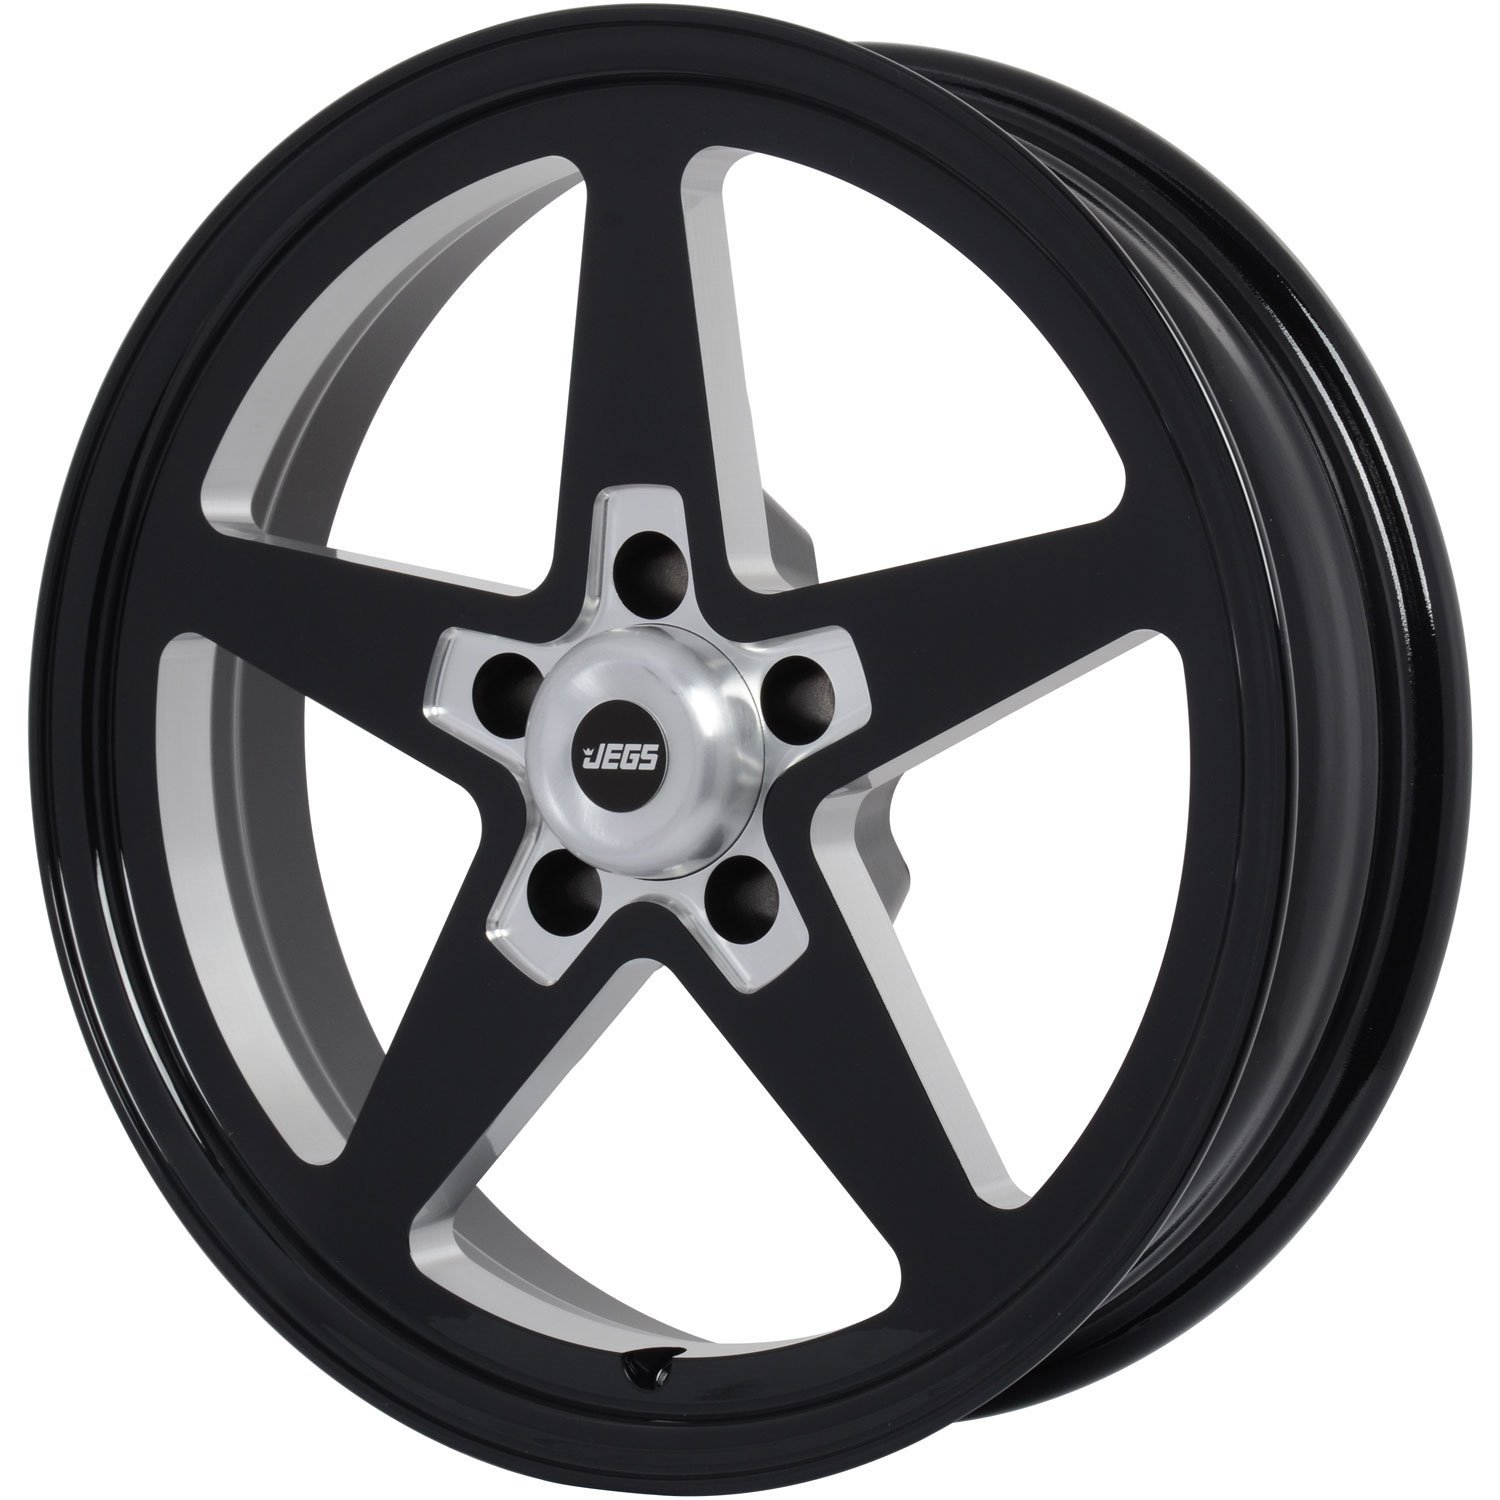 SSR Star Wheel [Size: 17" x 4.5"] Gloss Black